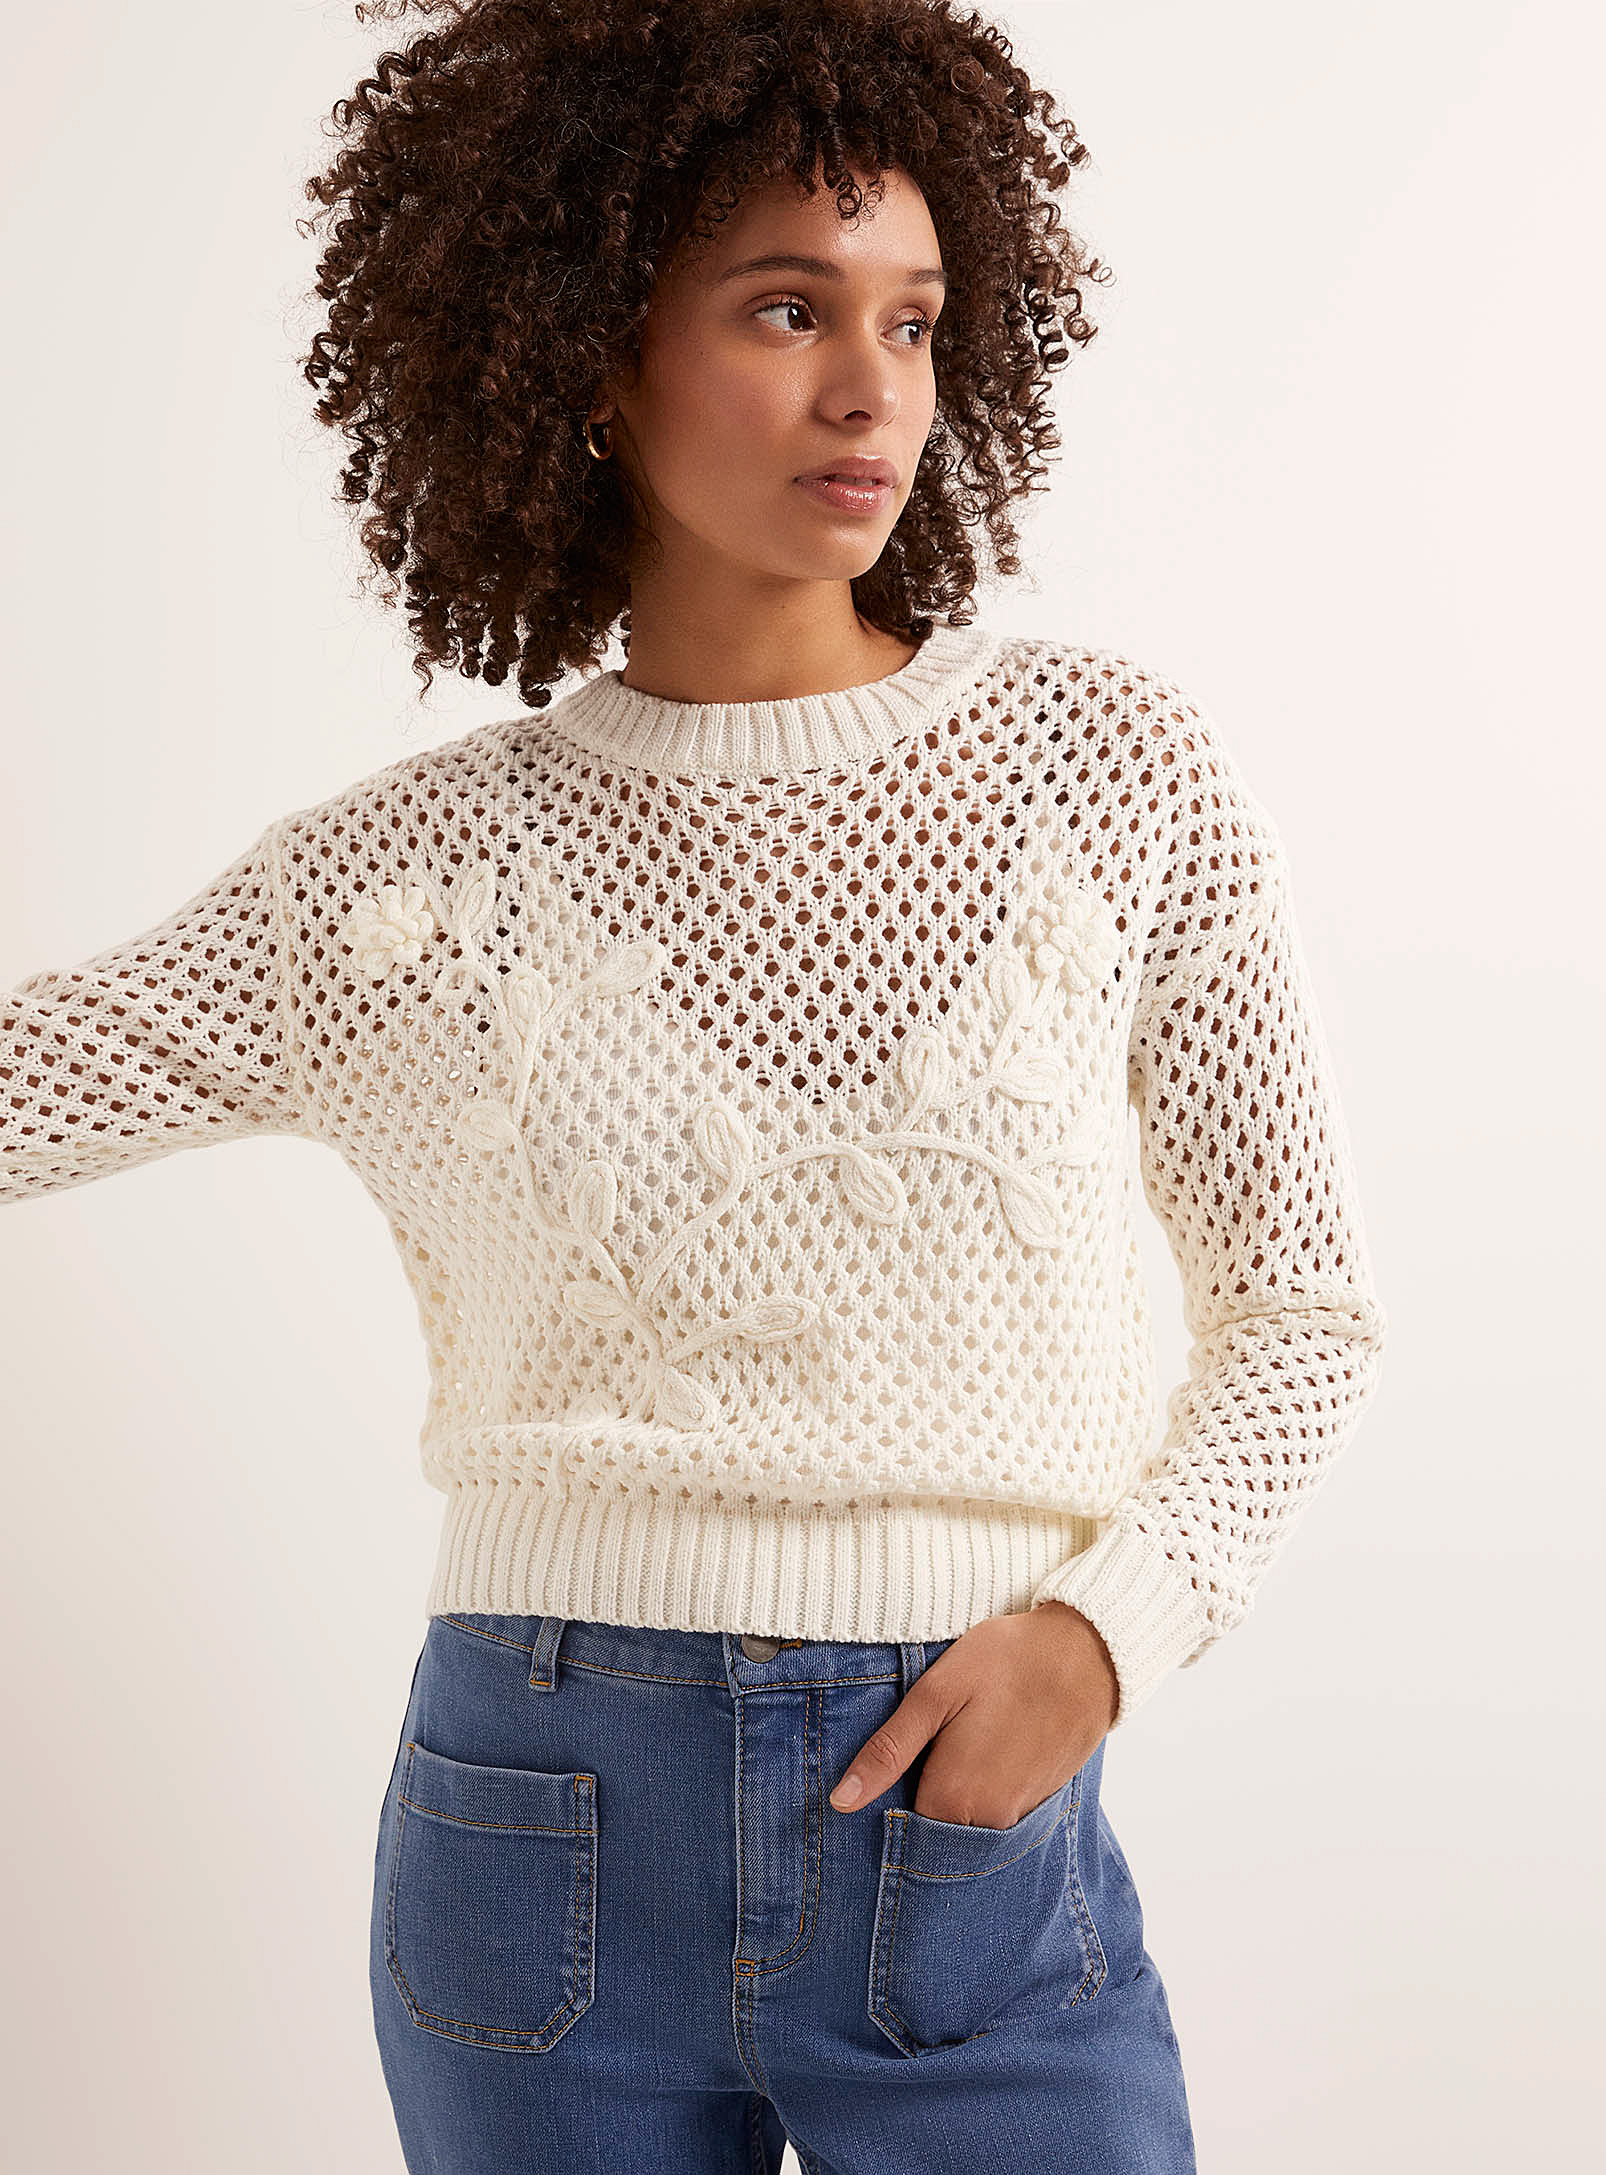 Contemporaine - Women's Appliqué flowers mesh sweater